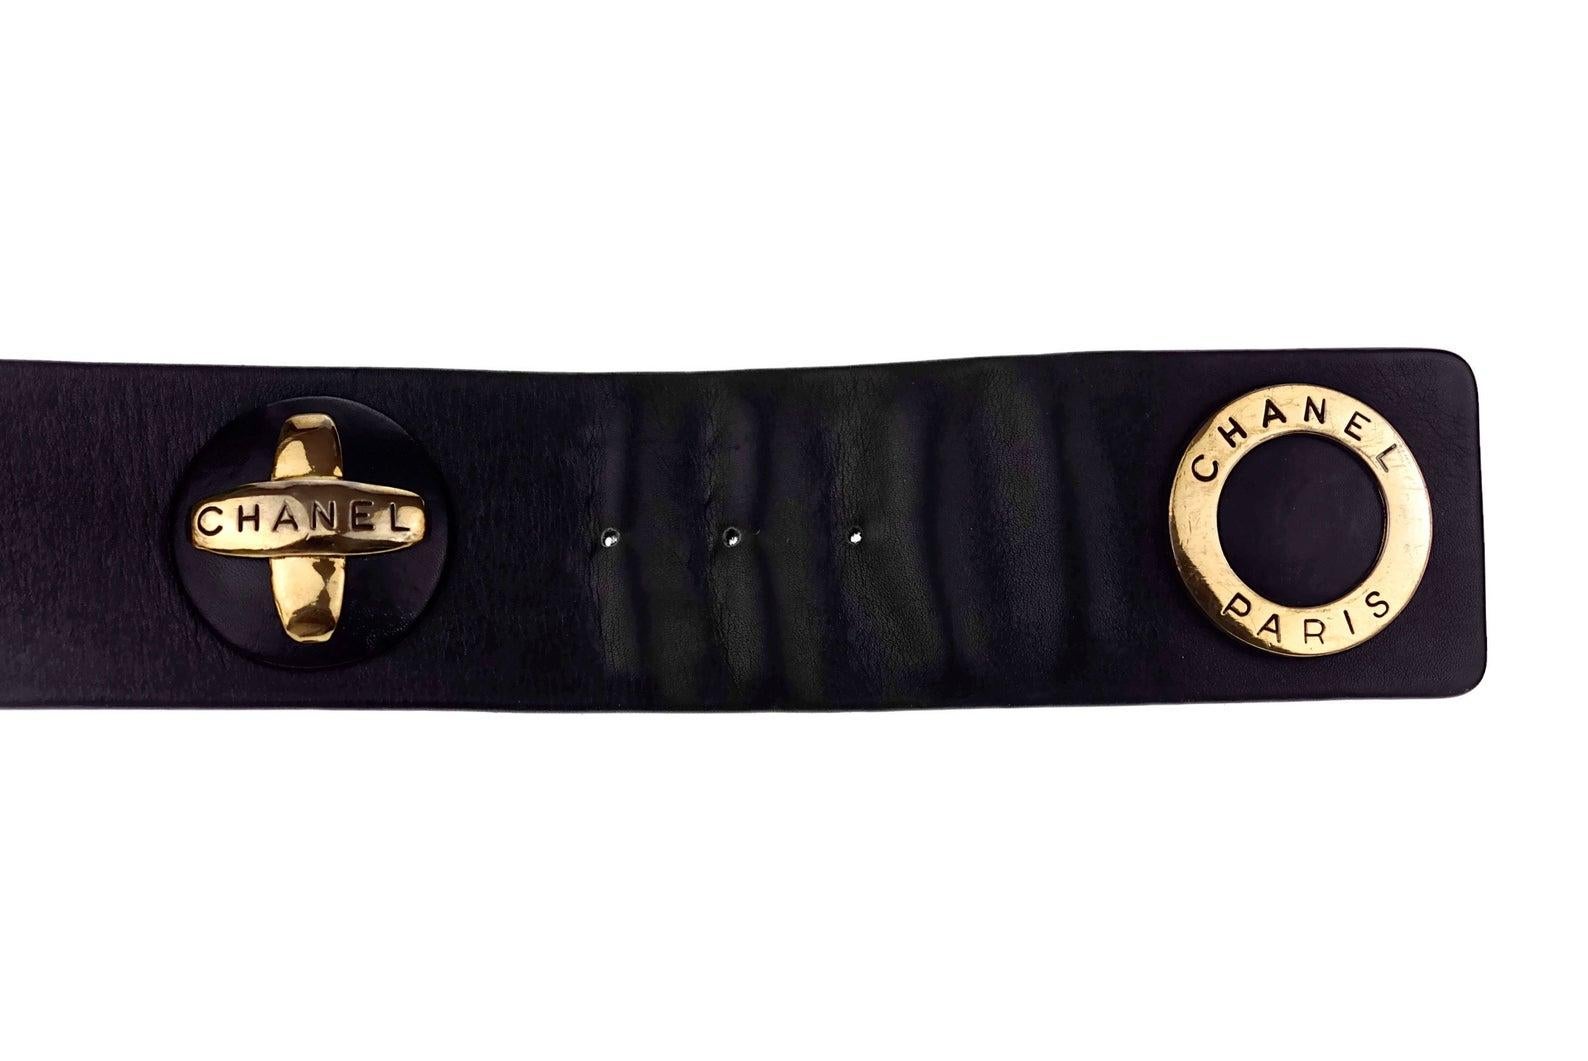 Black Vintage Iconic CHANEL Metal Emblem Leather Belt